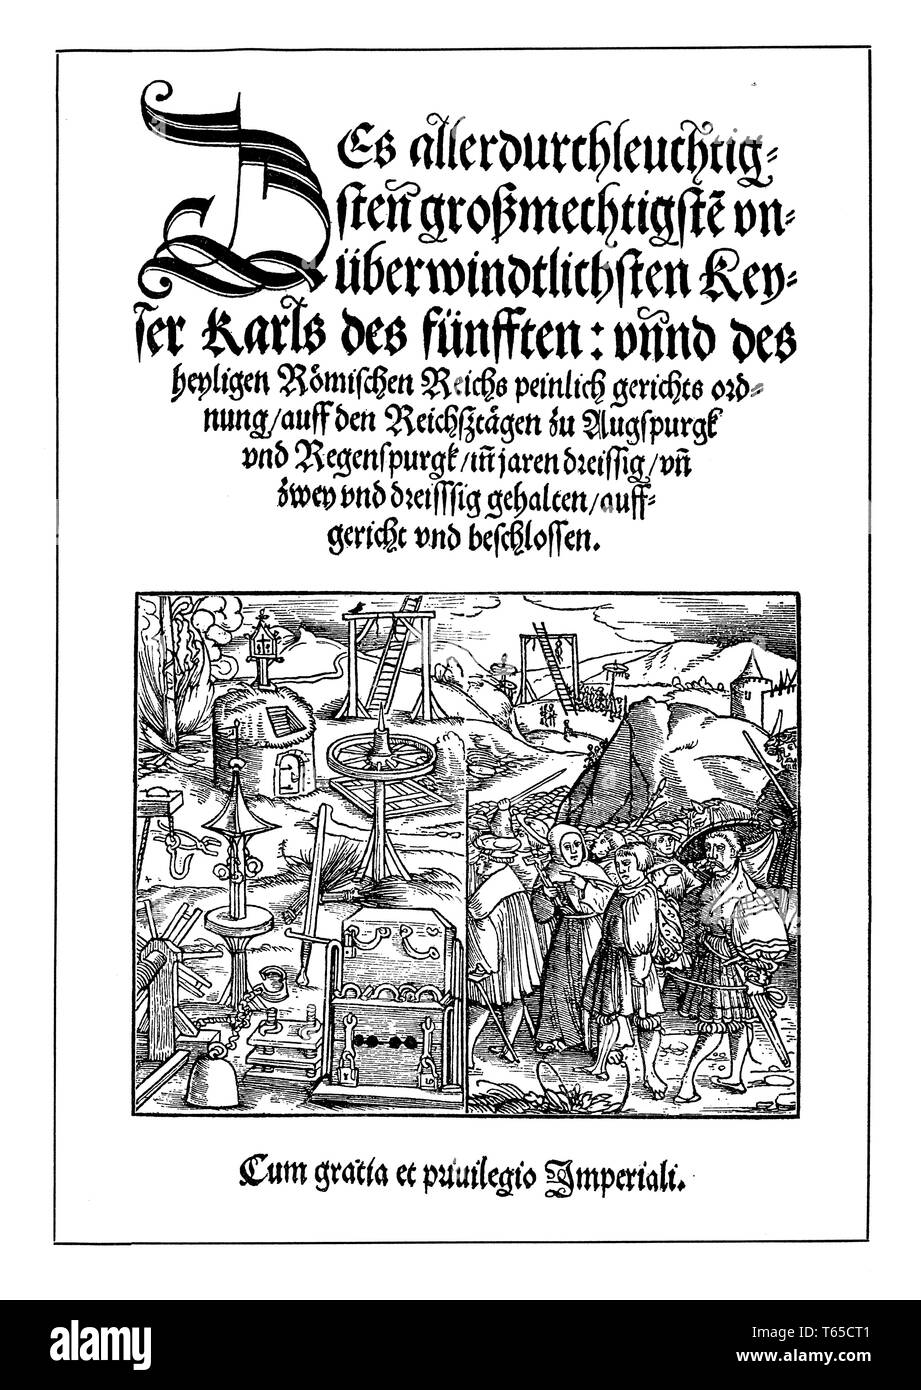 Faksimile der Titel von Karl V. "Peinliche Halsgerichtsordnung", Stockfoto